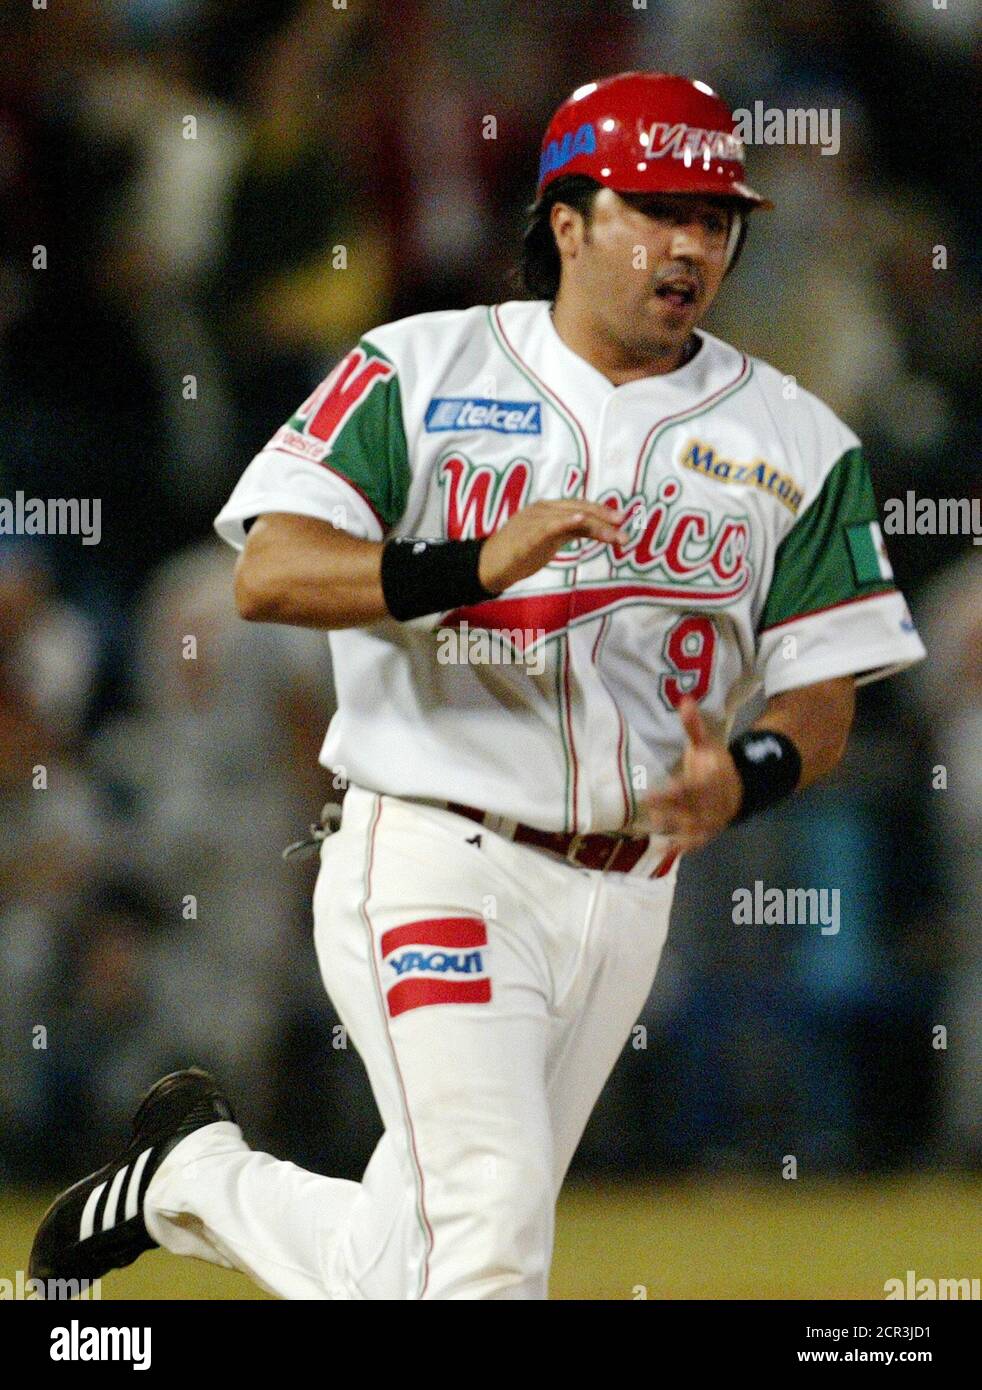 Mexican third base player Castilla of Los Venados de Mazatlan runs arounds  the bases after hitting a home run against Puerto Rico's Indios de Mayaguez  in Mazatlan, Mexico. Mexican third base player